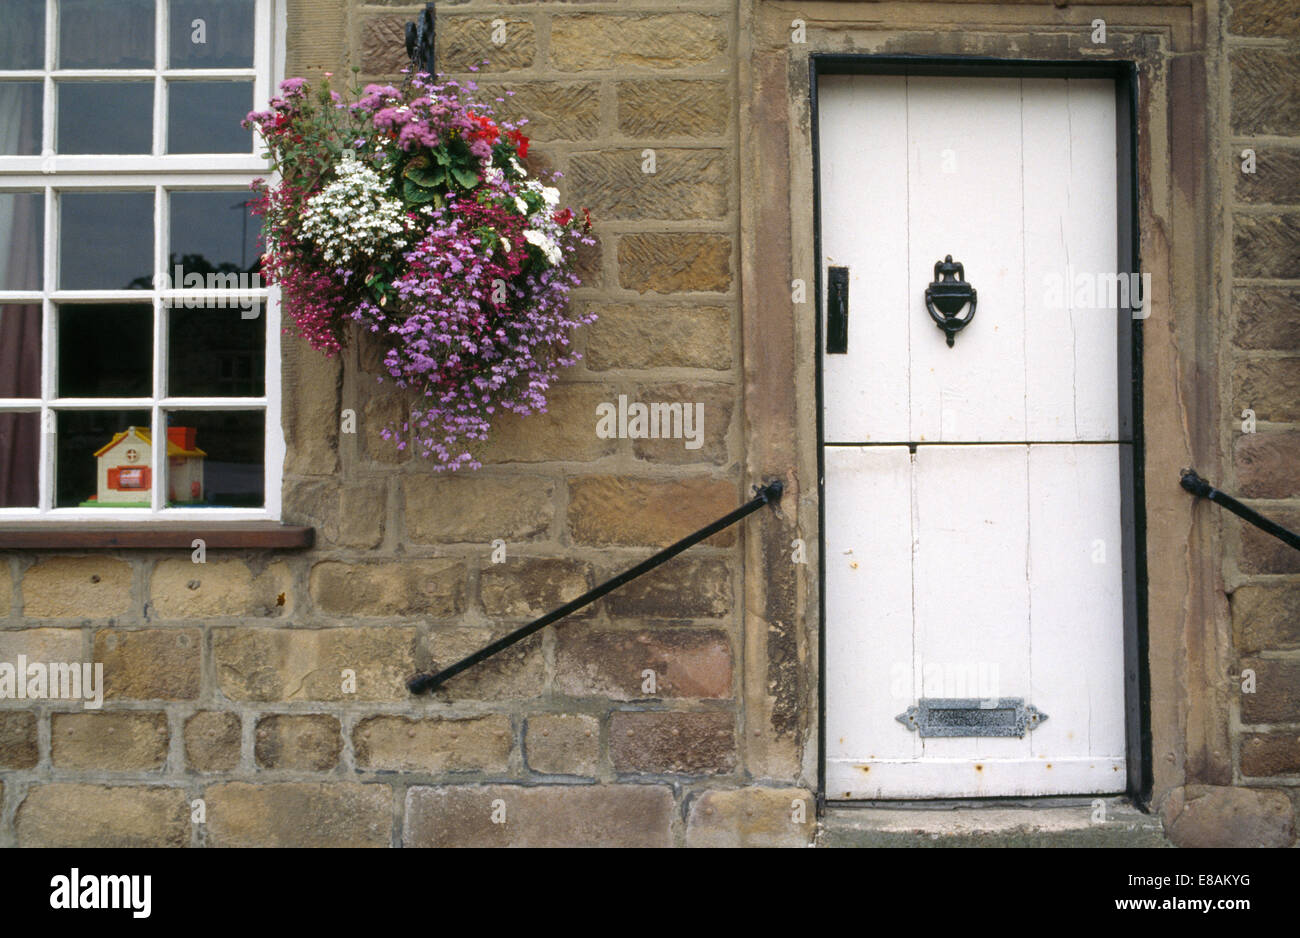 Geranios en cestas colgantes al lado de la puerta delantera blanca de casa en piedra con barandillas en las paredes. Foto de stock